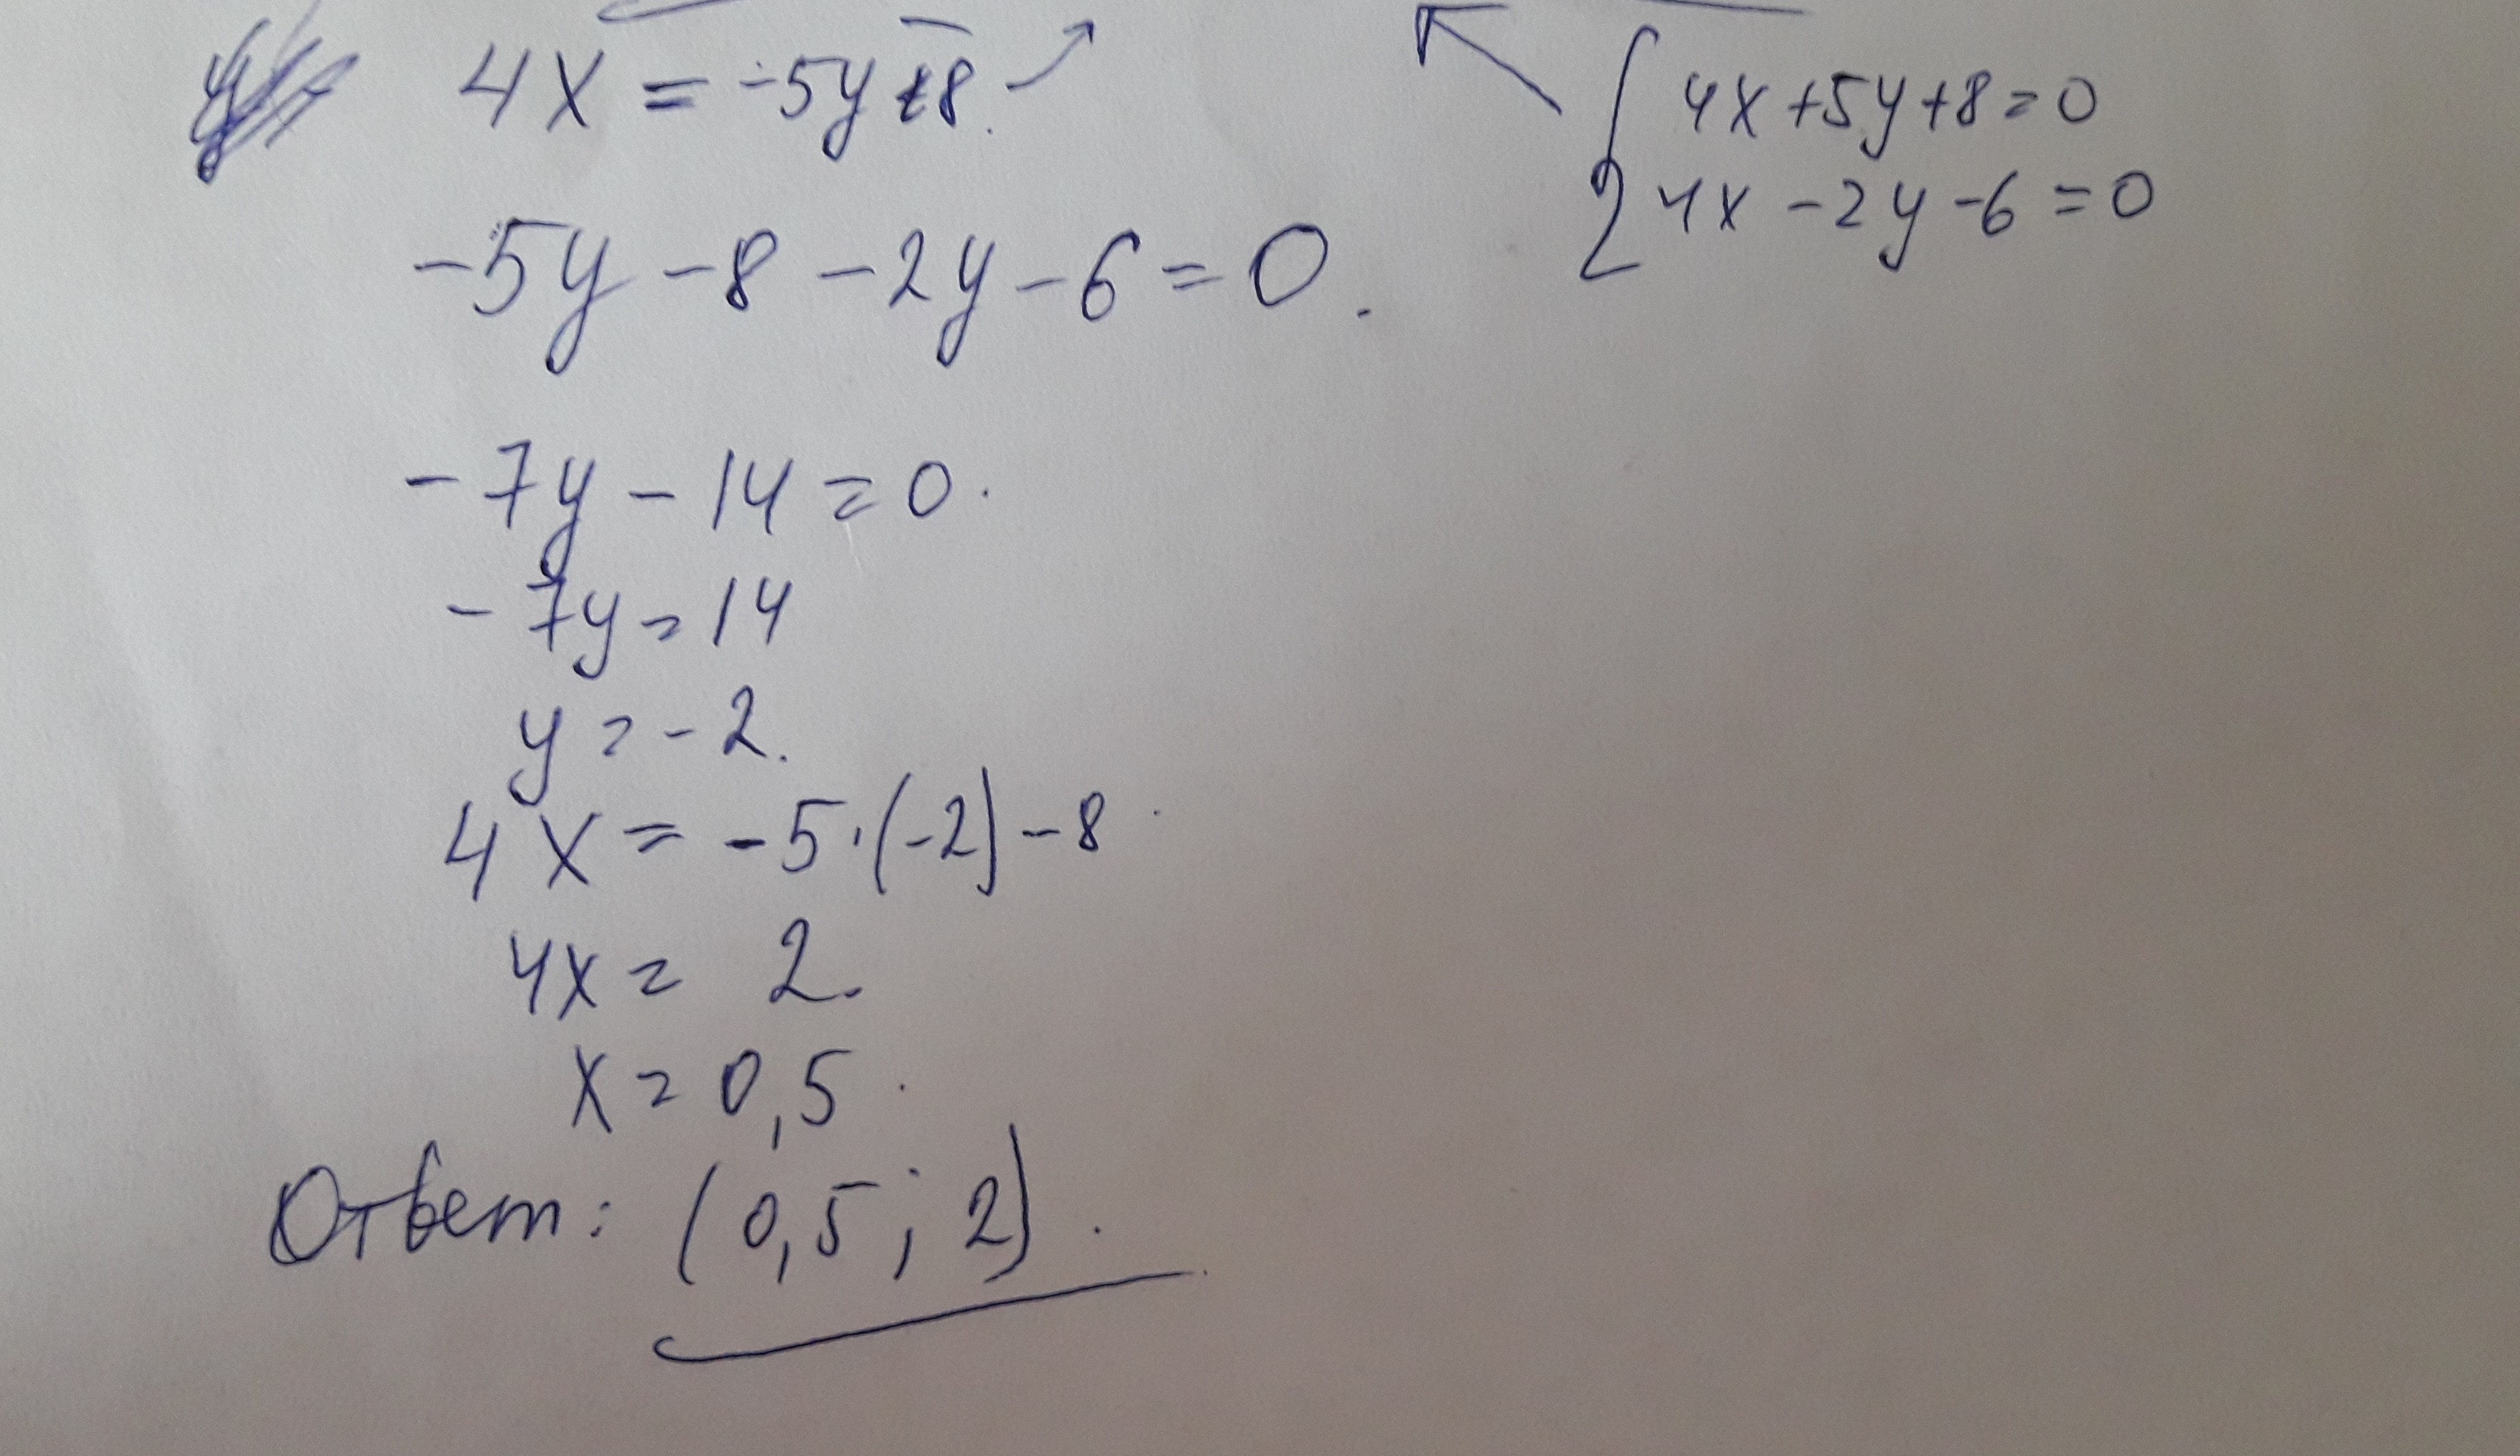 2х 5у 5 3. А4х5. 6х2.4. Найдите точку пересечения прямых 3) 4х+5у + 8 =0, 4х-2у-6 0. Прямая задана уравнением 5х-4у-2=0.